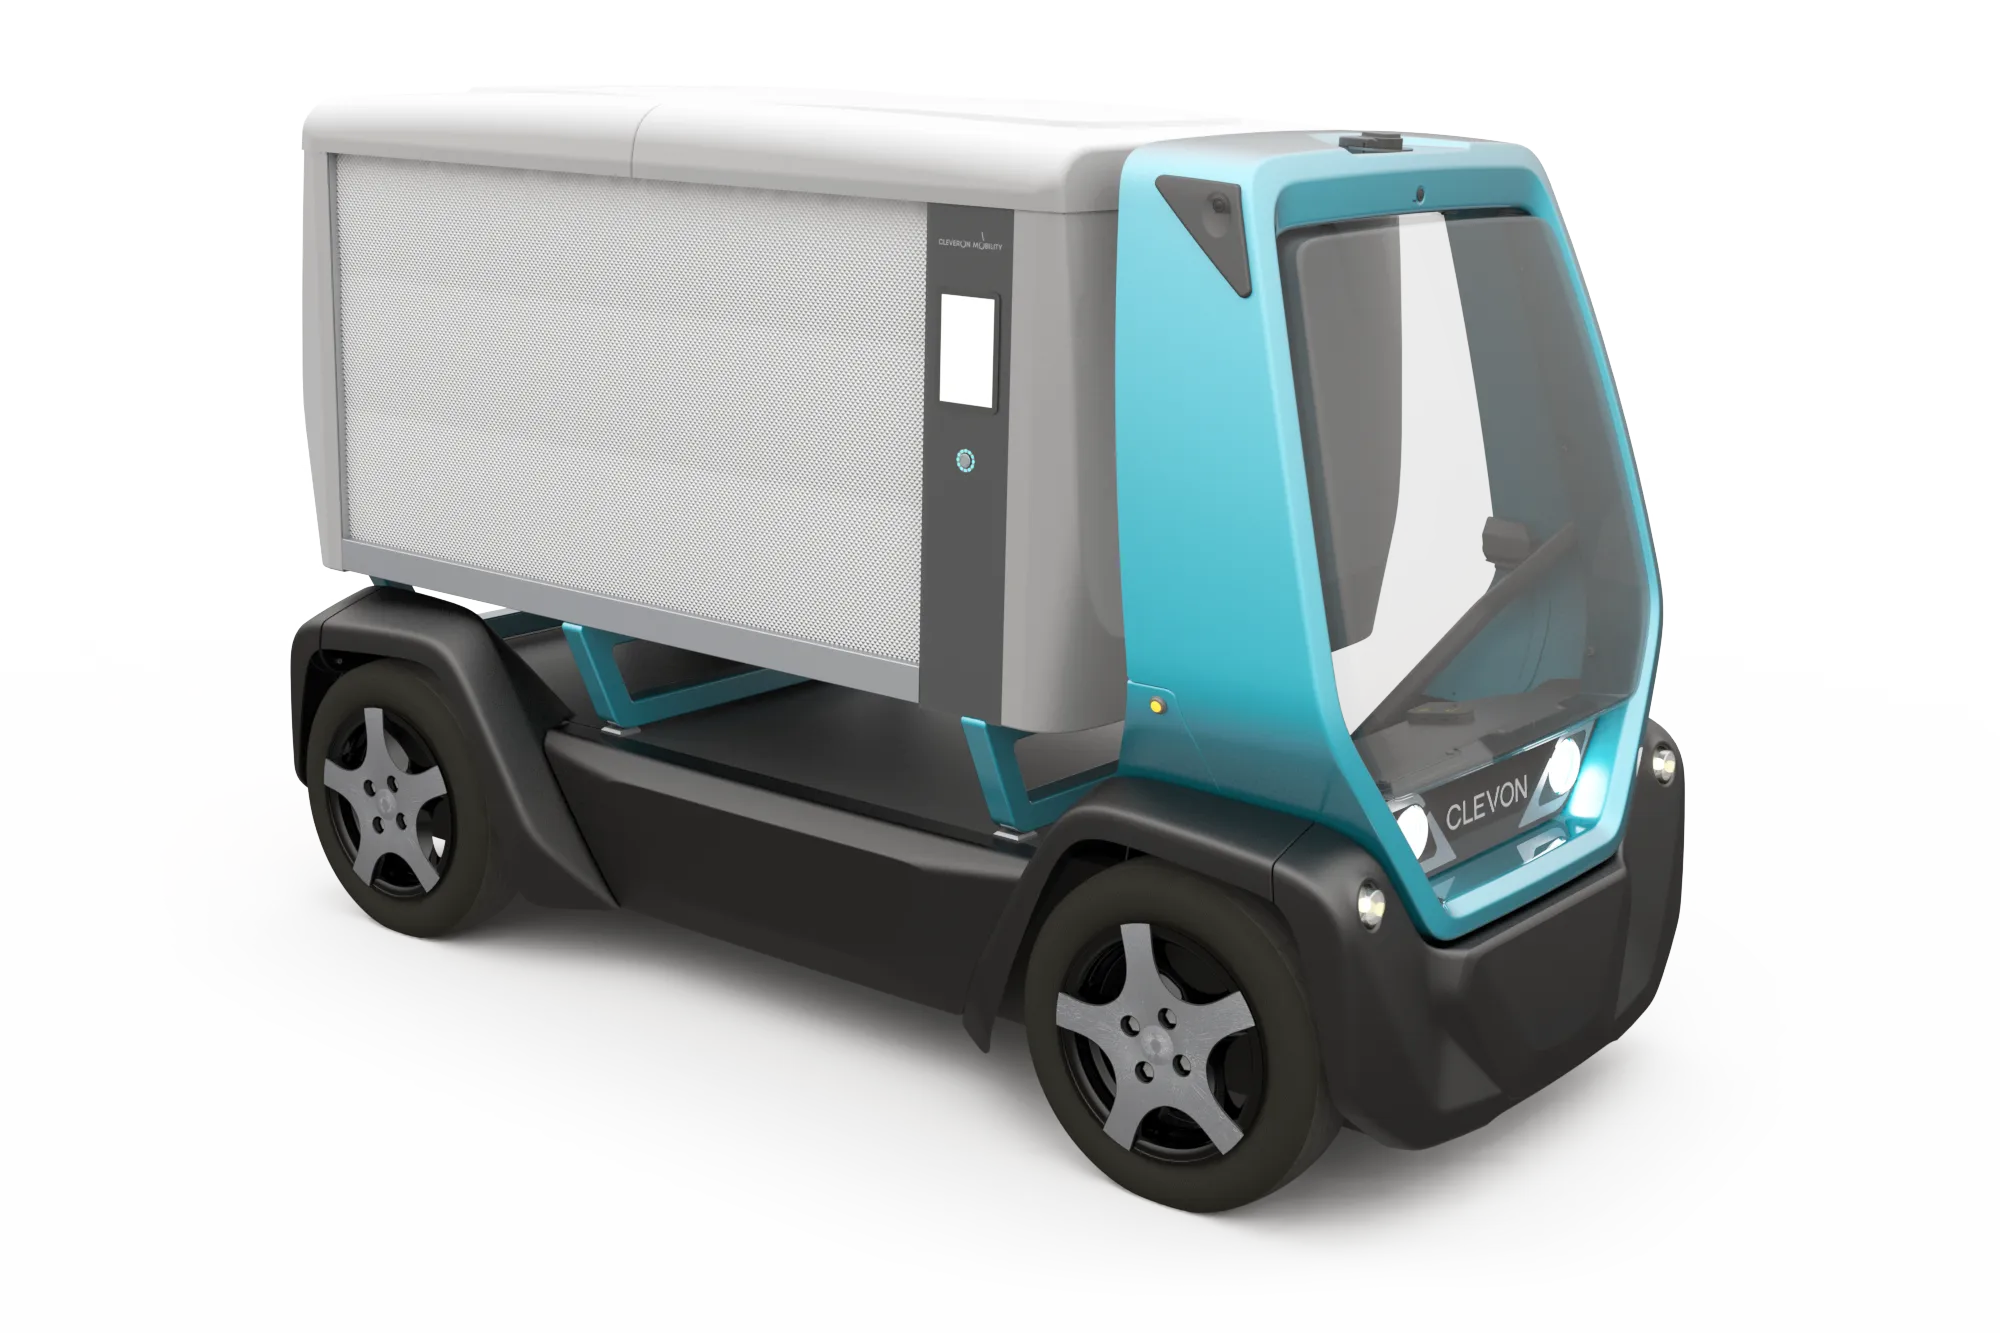 CLEVON 1 autonomous platform vehicle with CargoBox